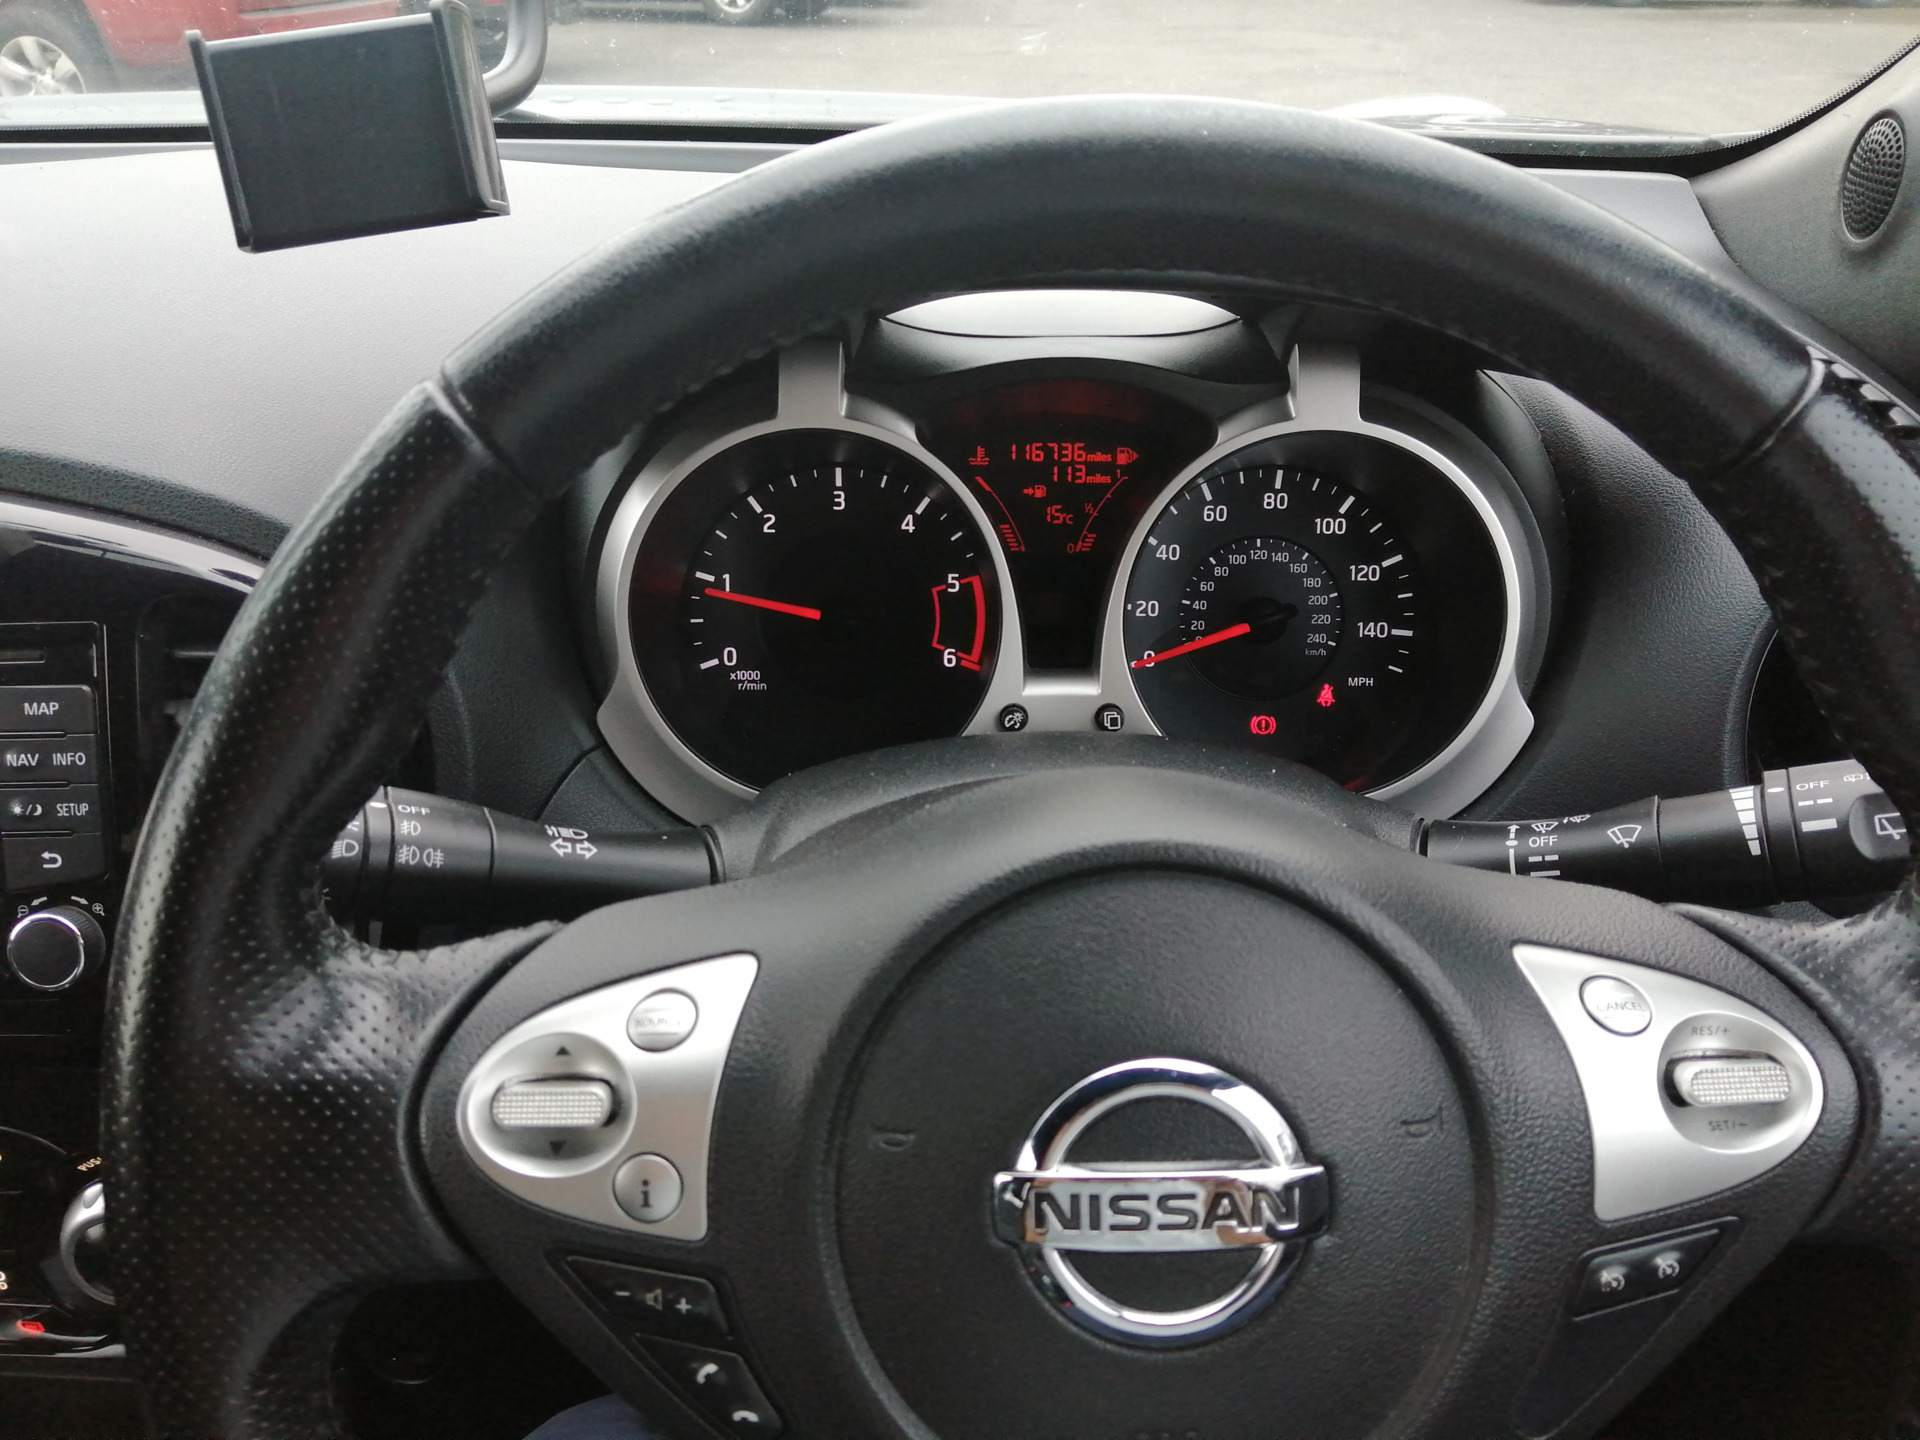 Used Nissan Juke 2015 in Monaghan